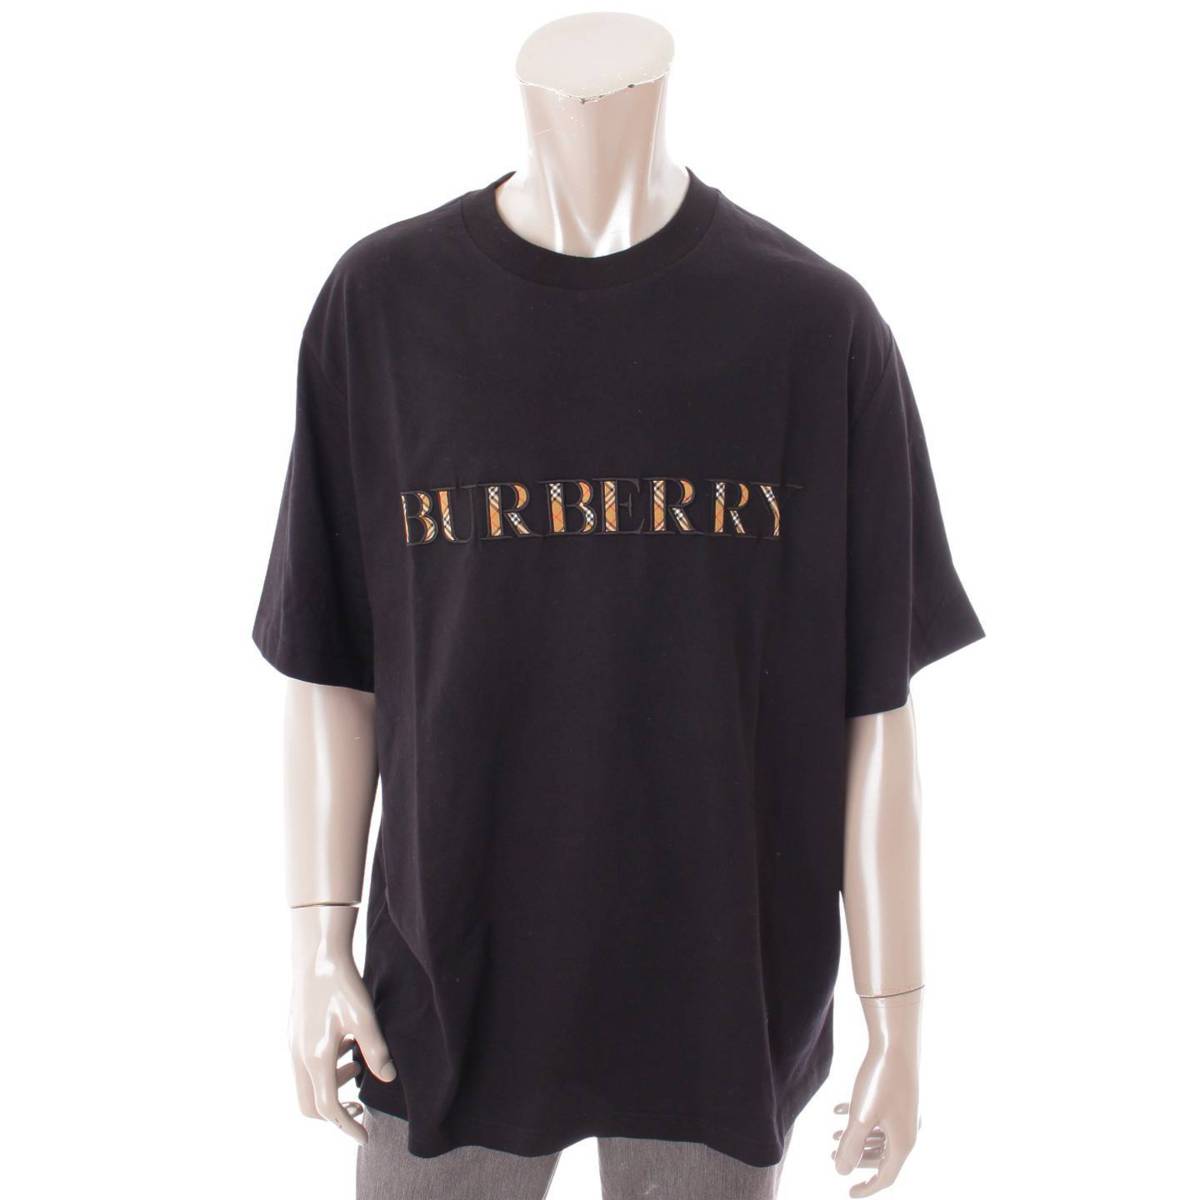 バーバリー ロンドン(Burberry London) メンズ ノバチェック柄 ロゴ刺繍 Tシャツ トップス 8007819 ブラック L